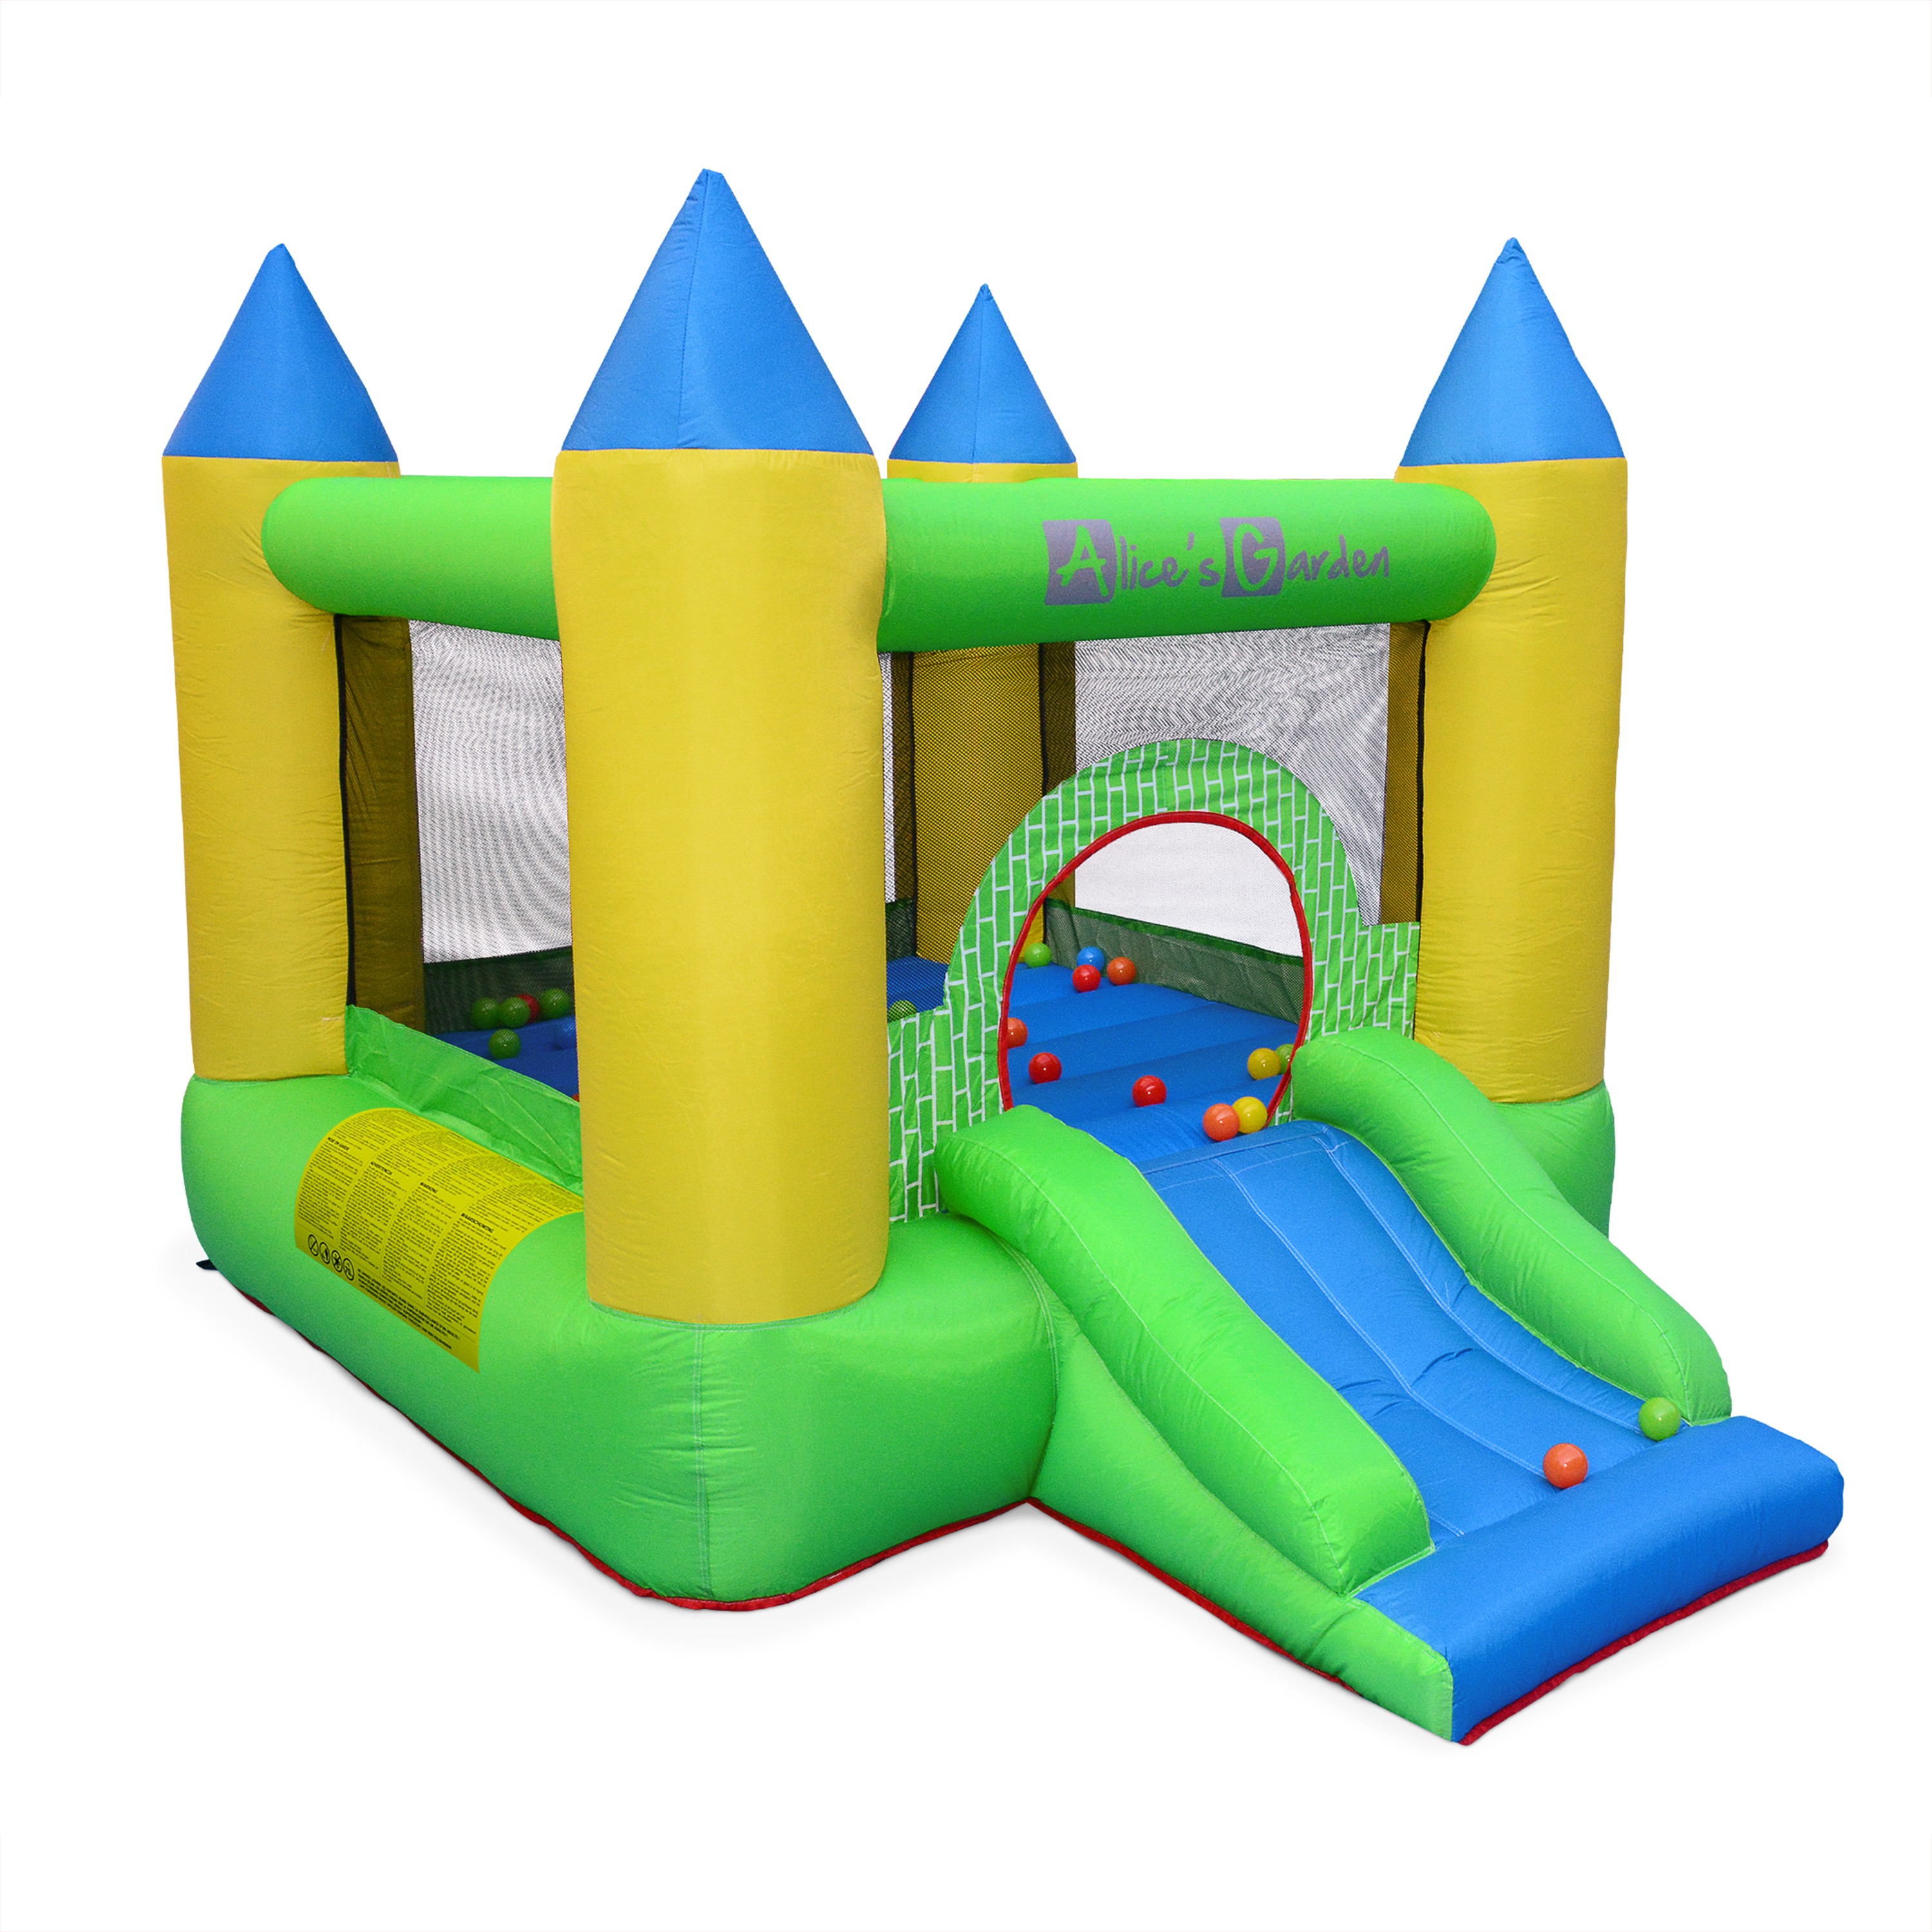 Château gonflable : un château et une piscine en un seul jouet